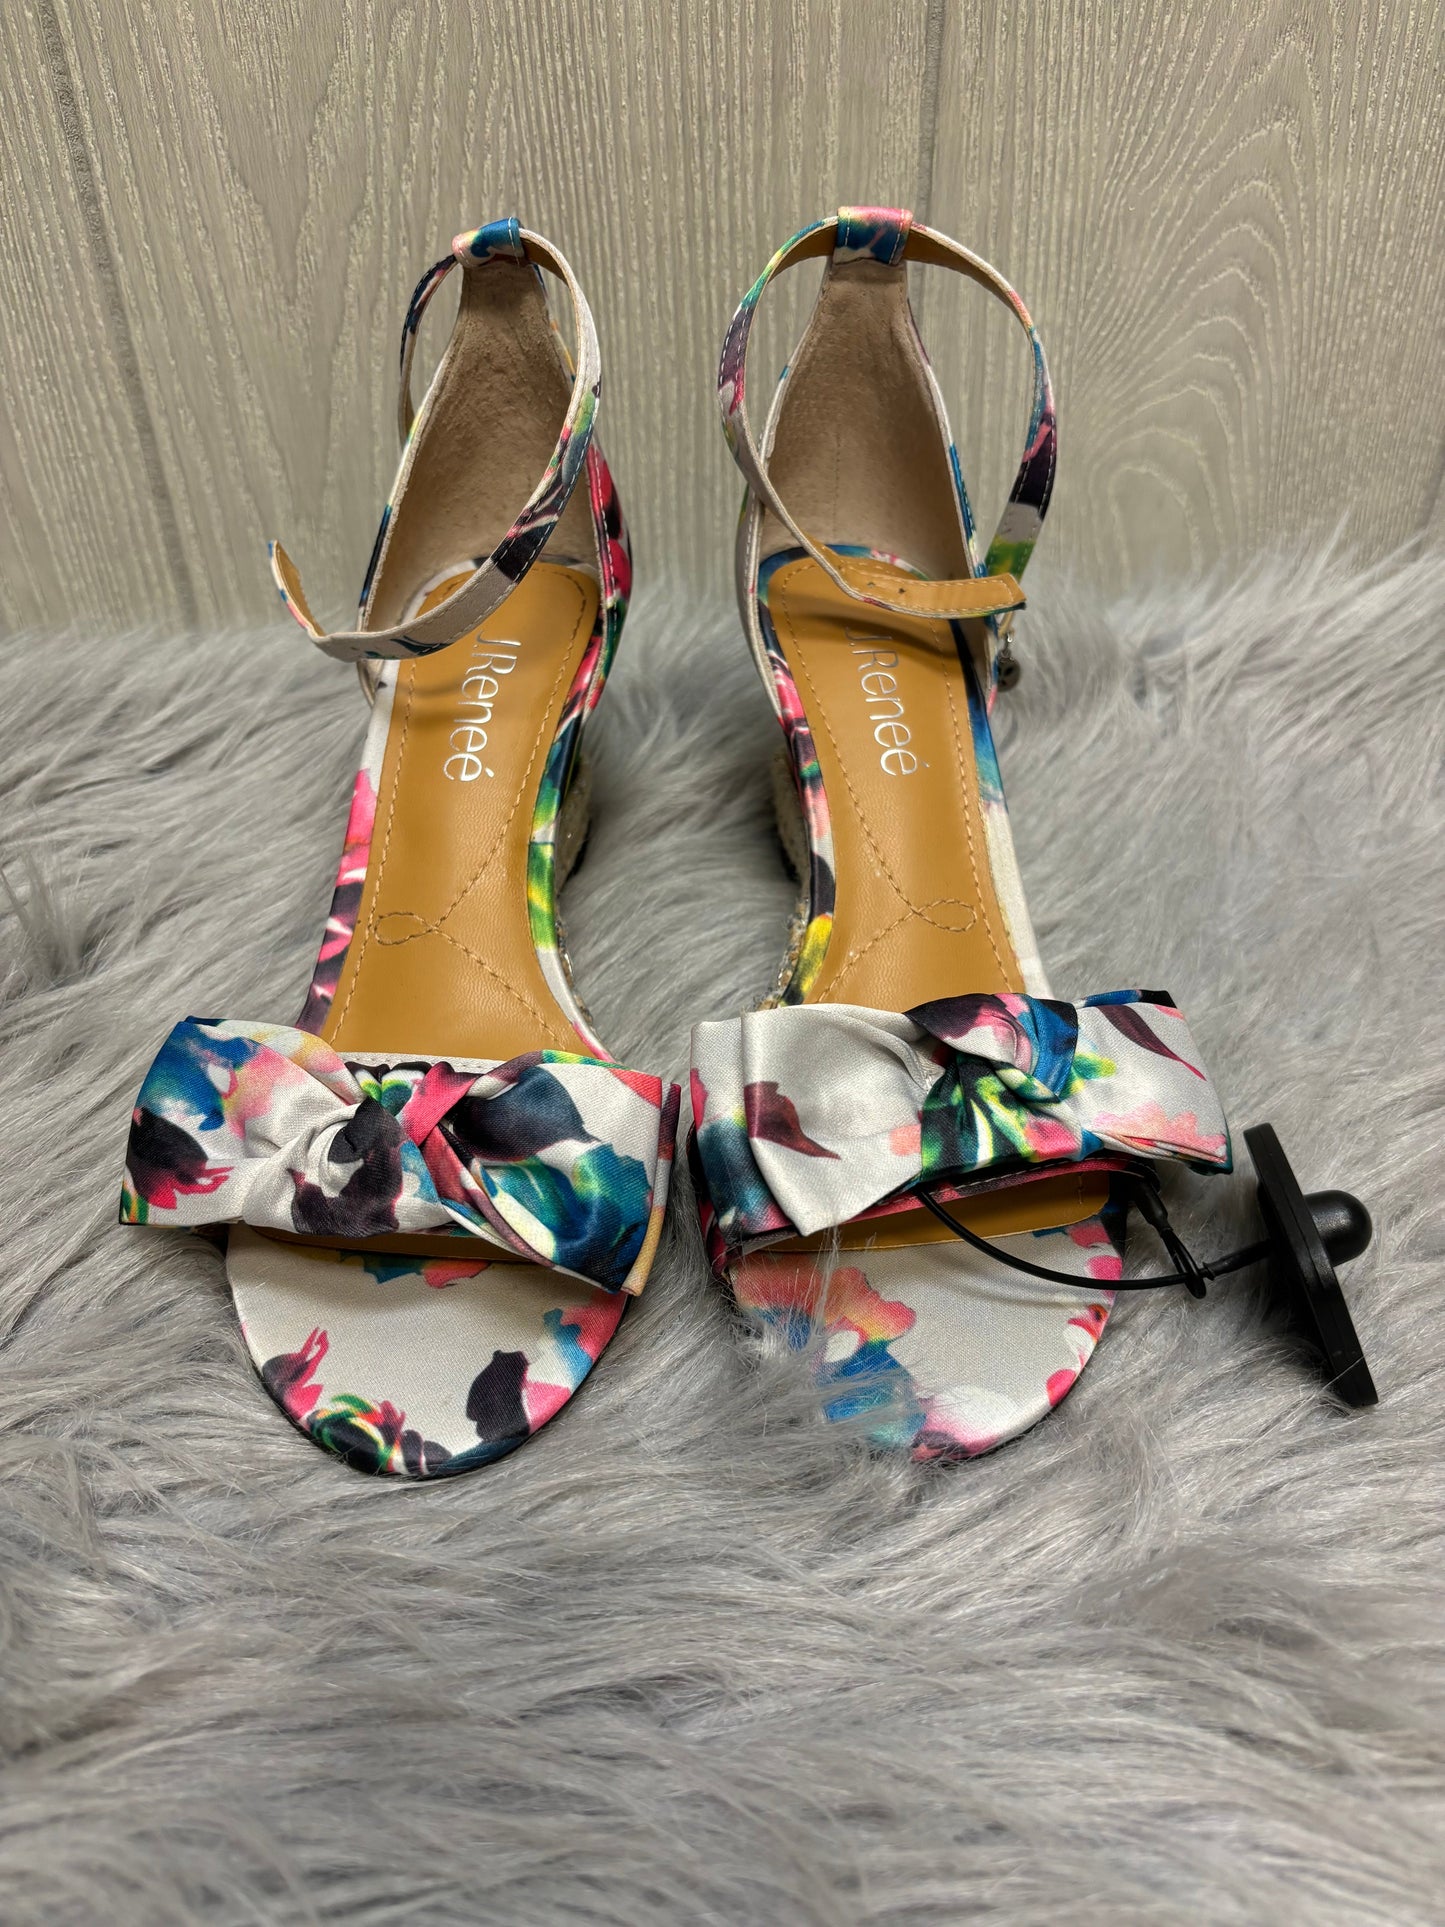 Floral Print Sandals Heels Wedge J Renee, Size 8